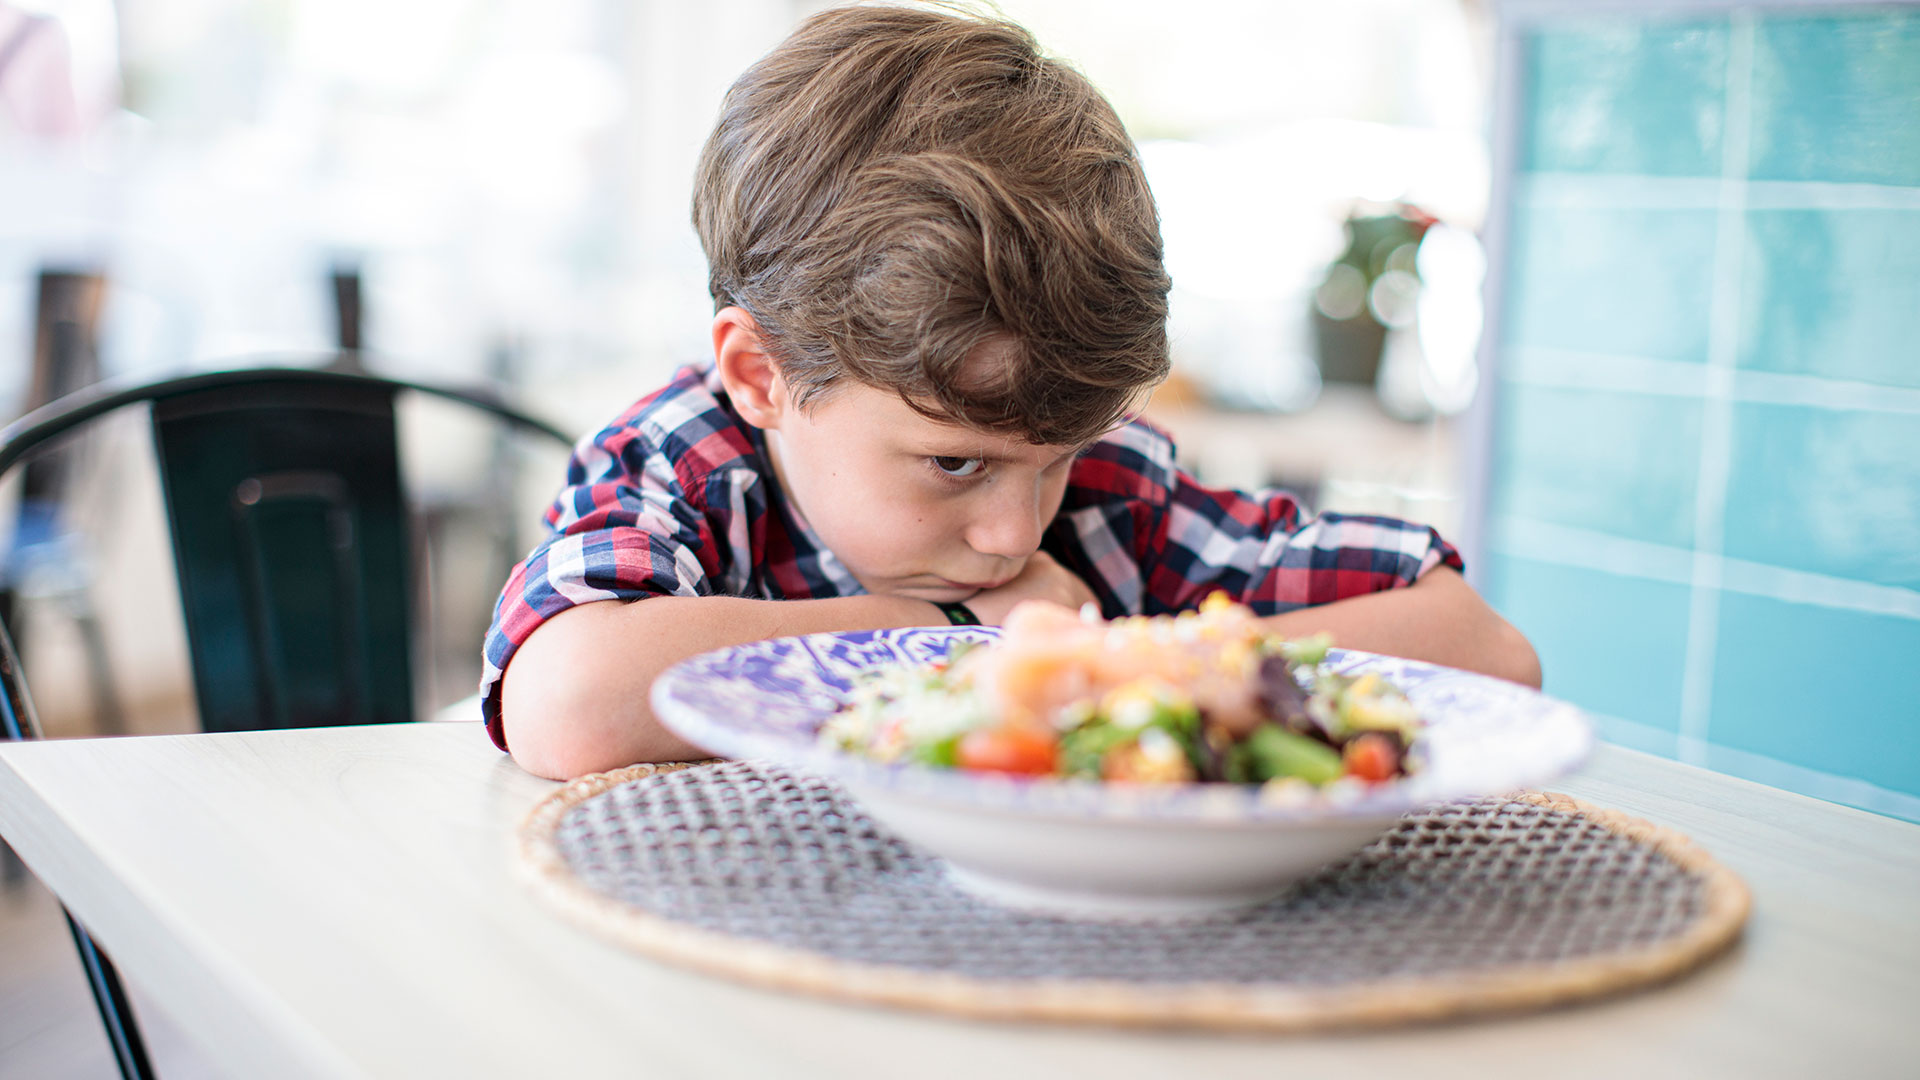 Los consumos poco frecuentes de alimentos protectores terminan siendo los de mayor incidencia en la baja calidad que caracteriza a la dieta infantil (Getty)